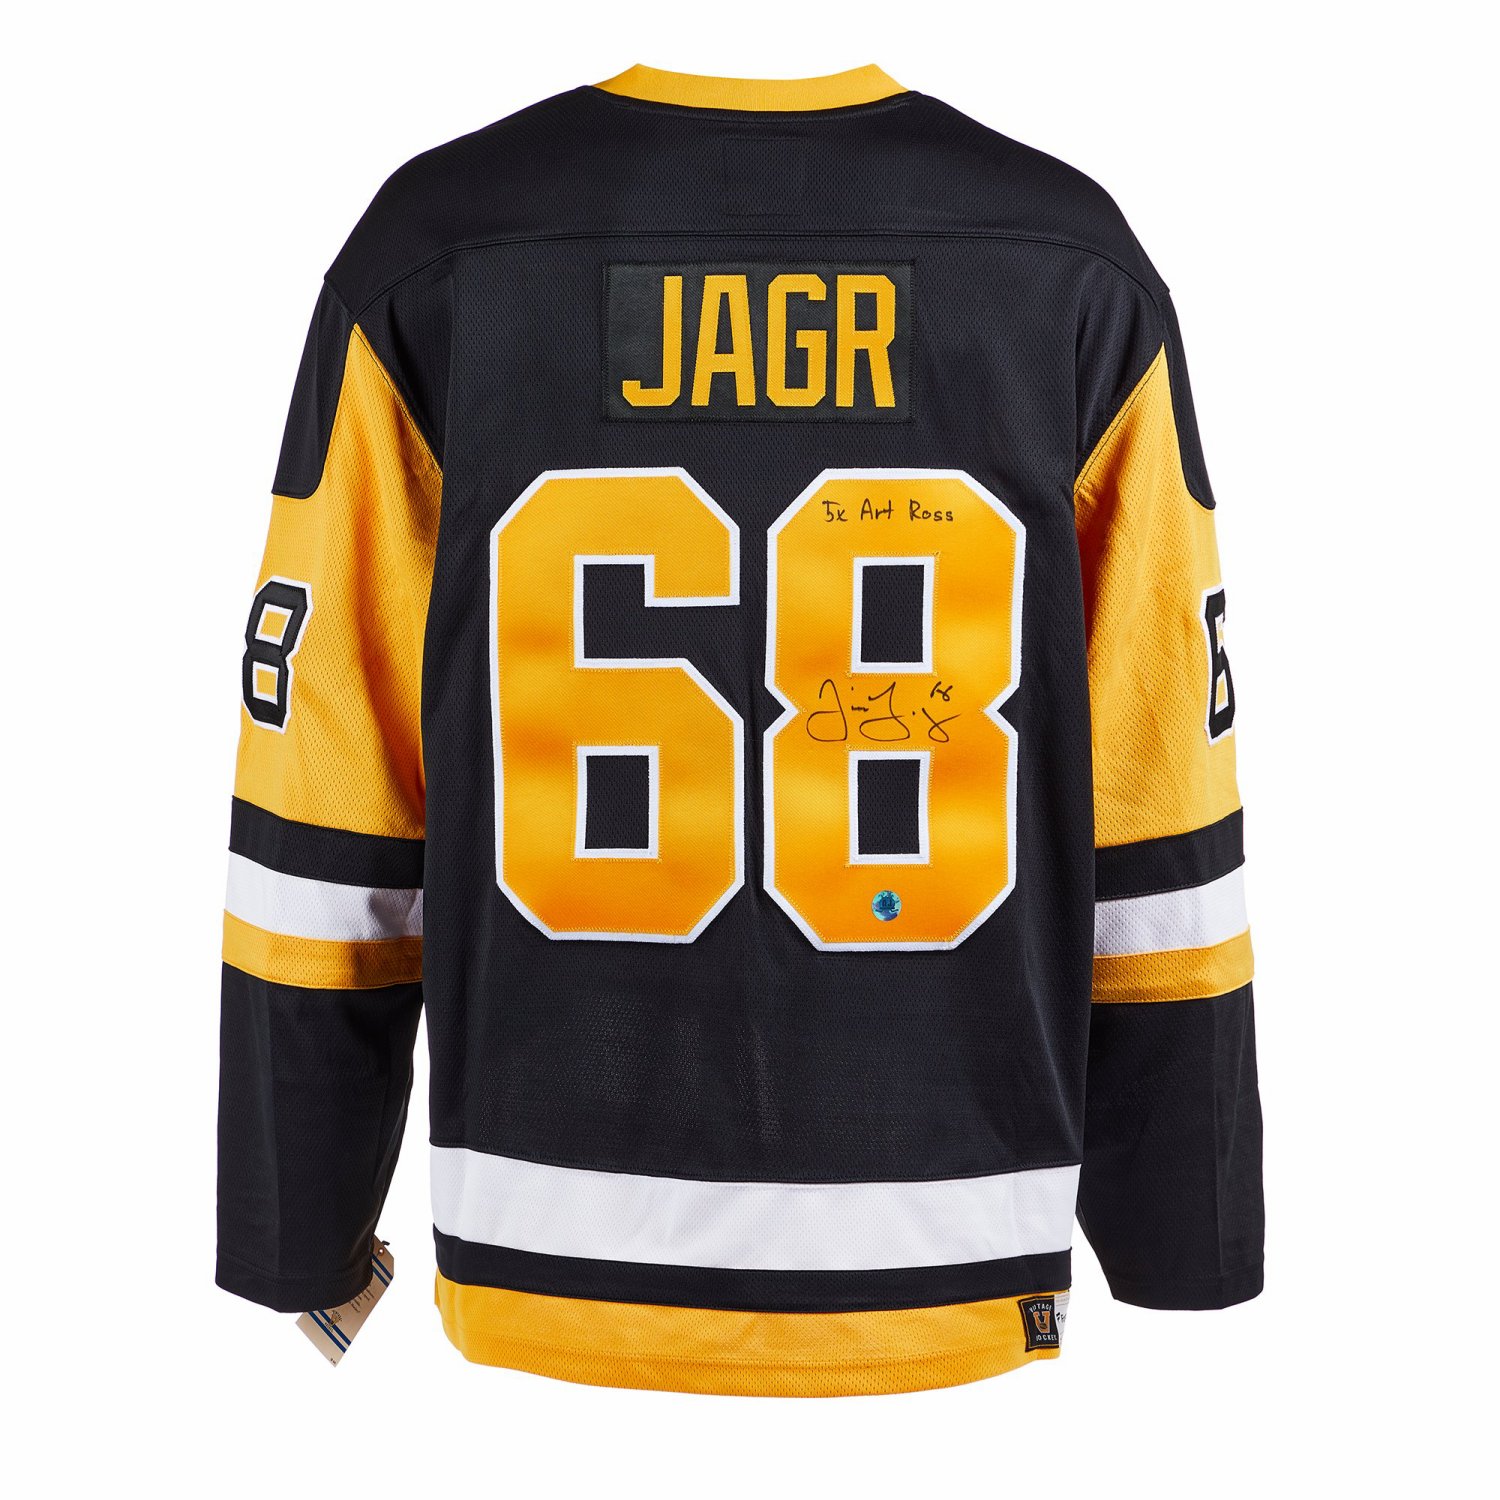 Jaromir Jagr NHL Original Autographed Jerseys for sale